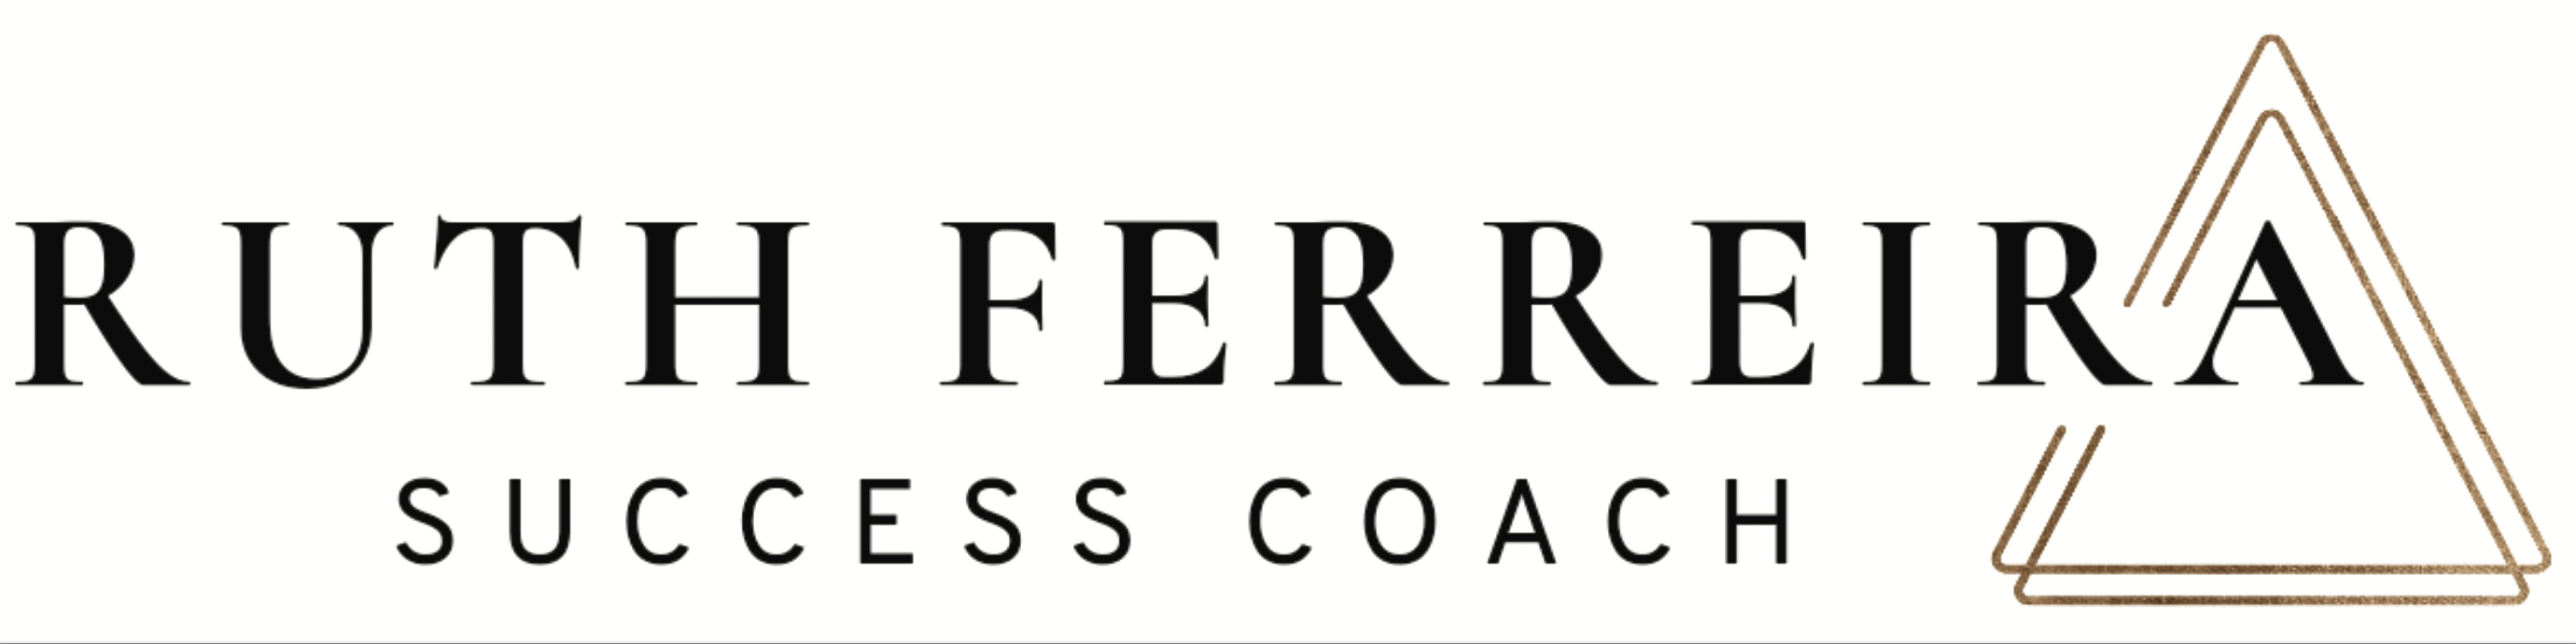 RUTH FERREIRA SUCCESS COACH logo